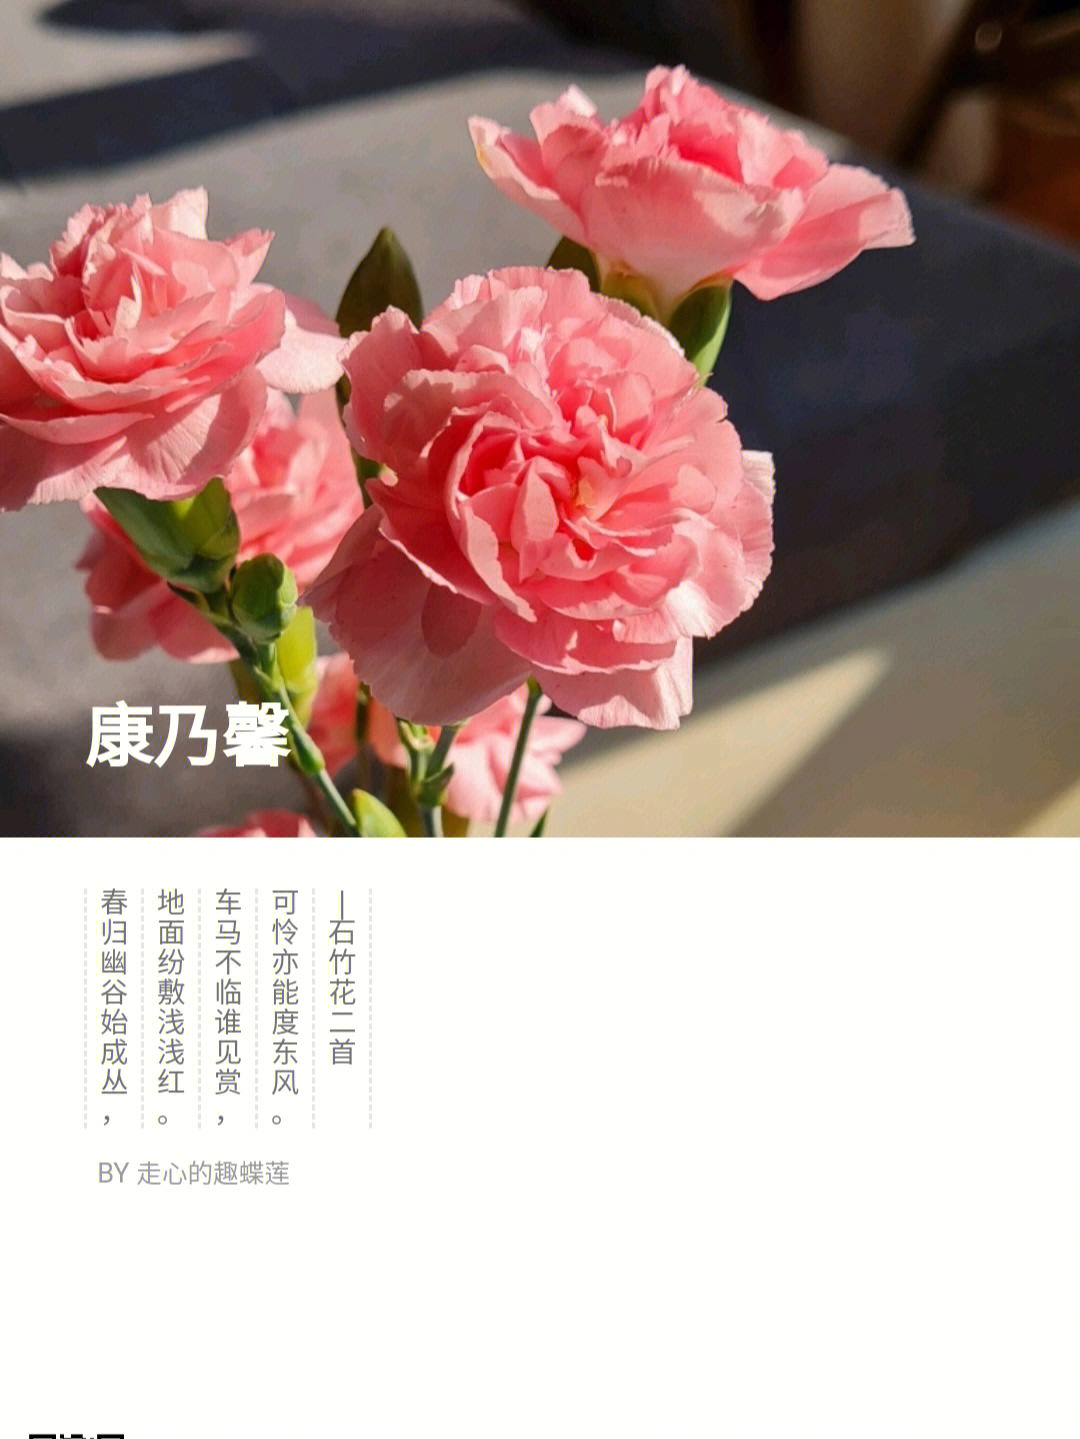 21朵康乃馨花语图片